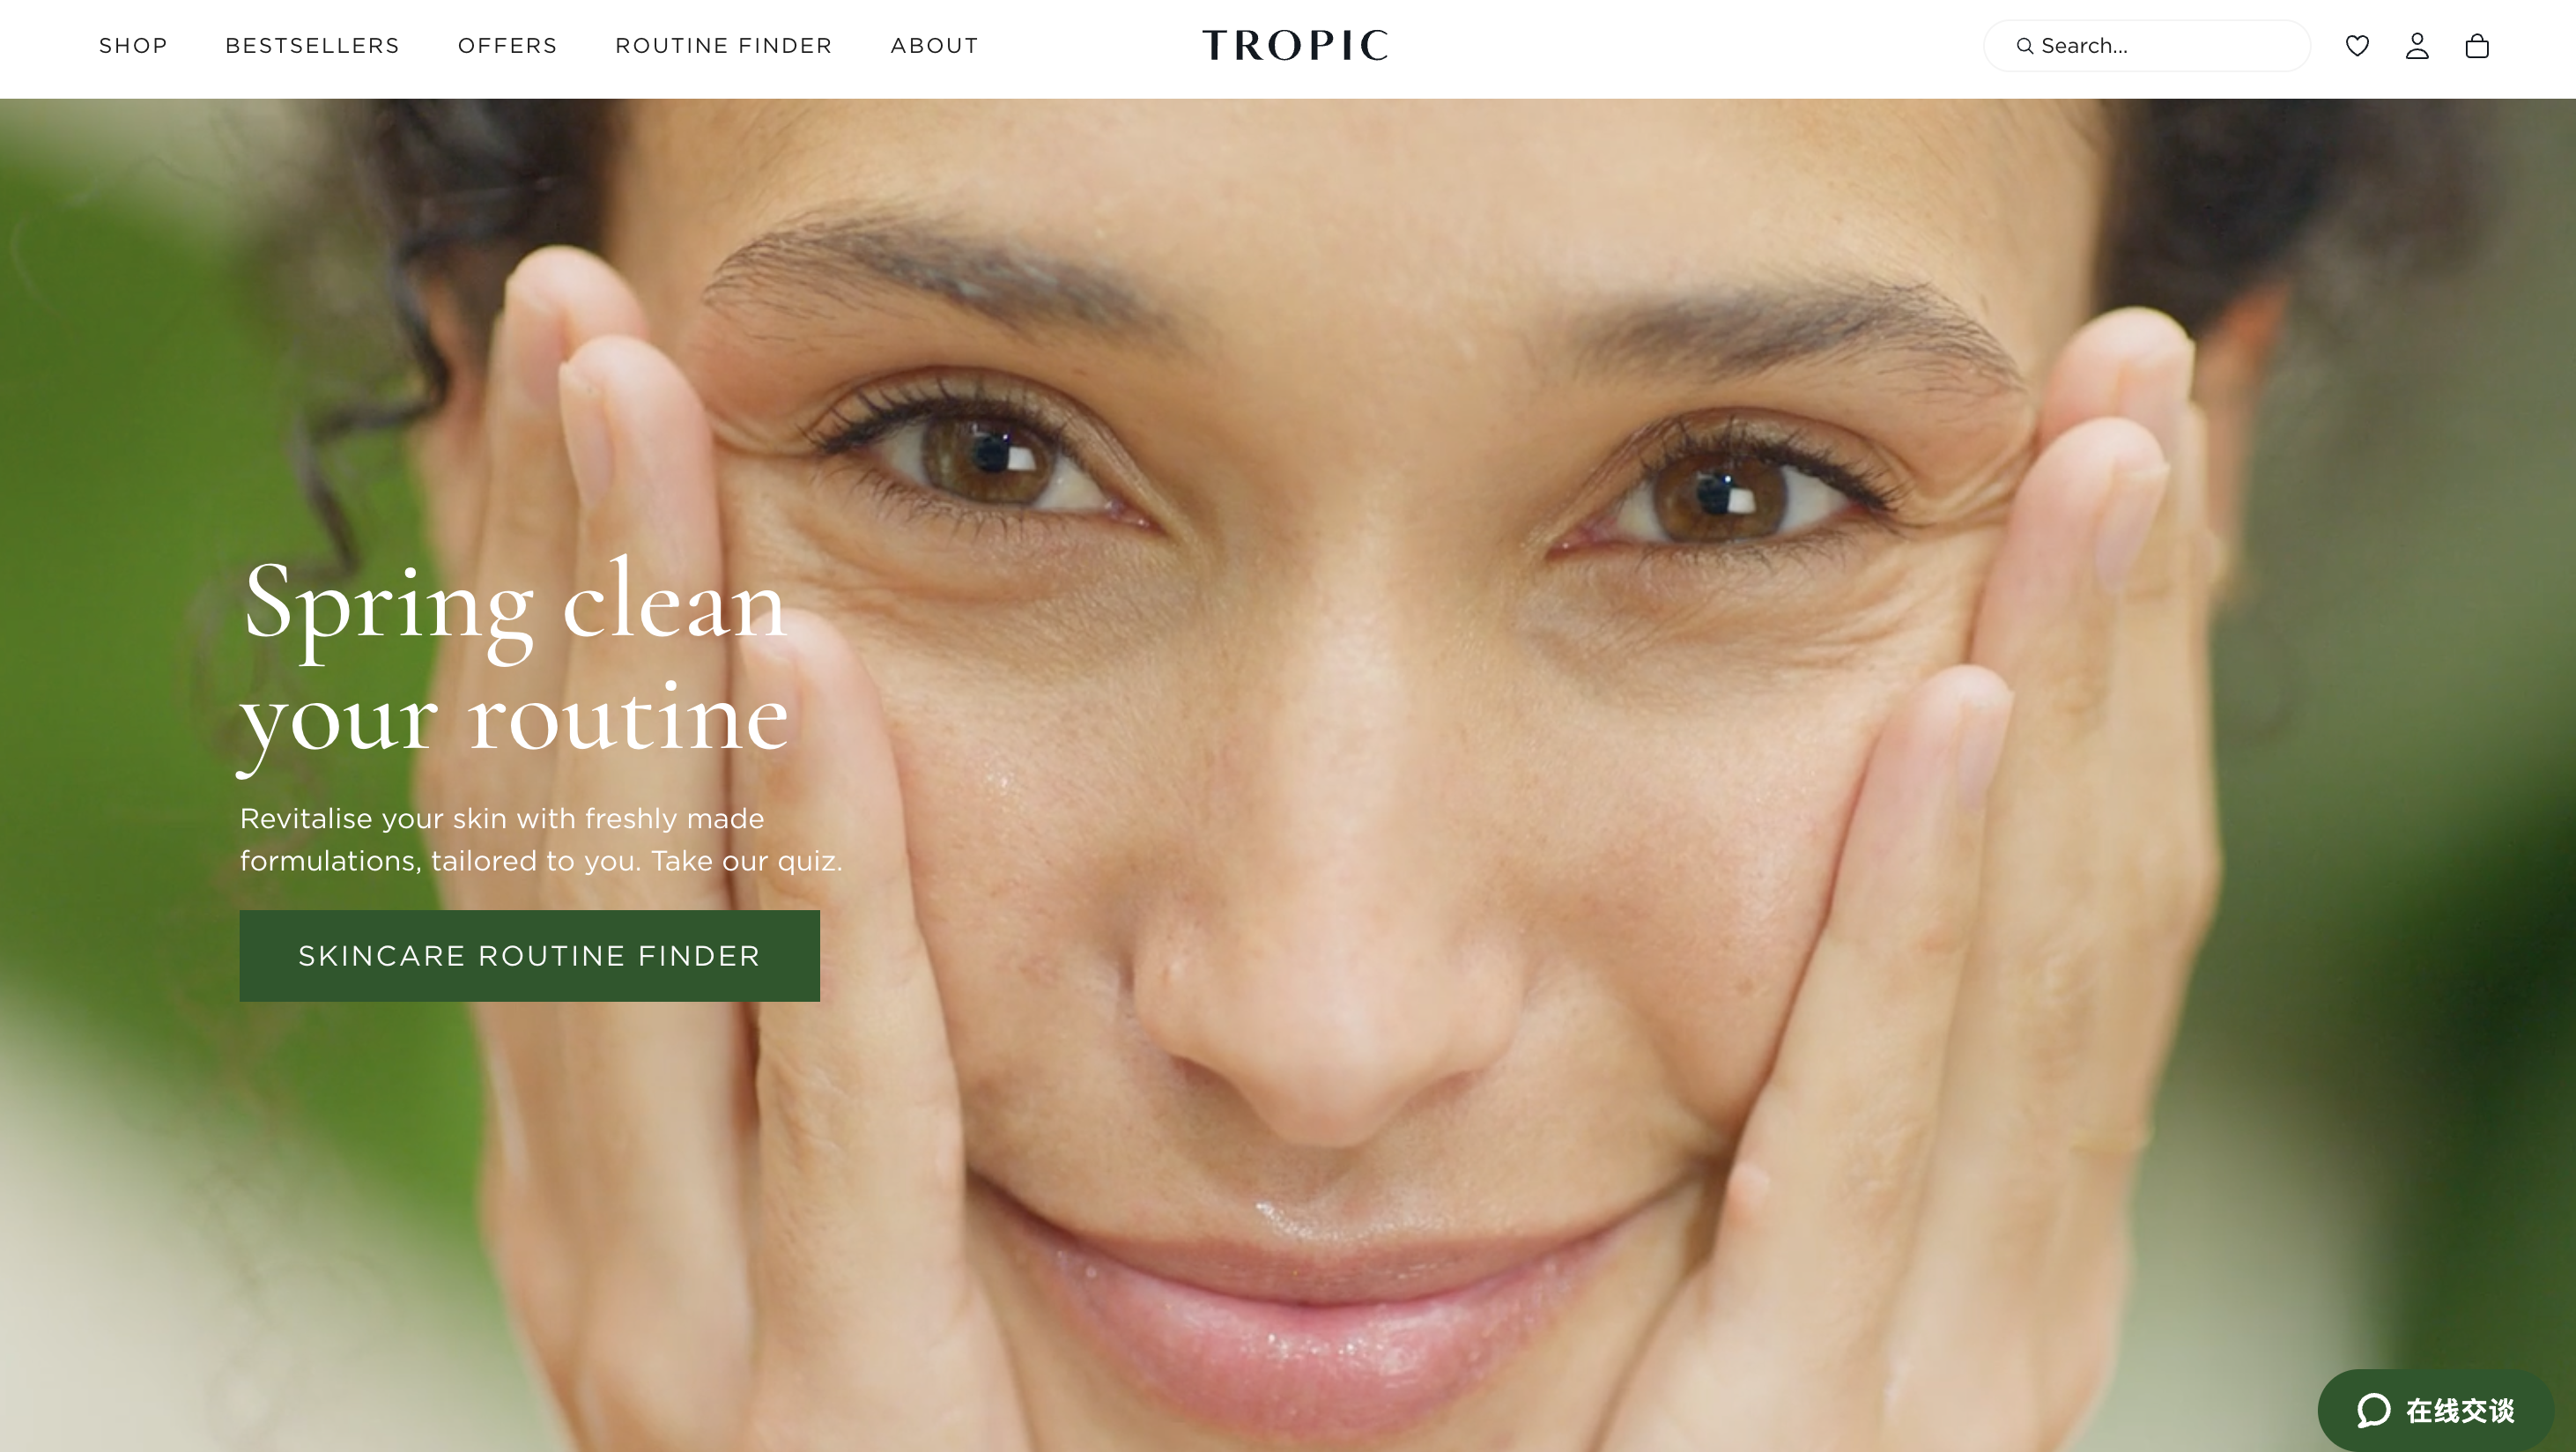 英国天然美妆品牌 Tropic Skincare 创始人回购品牌所有股权